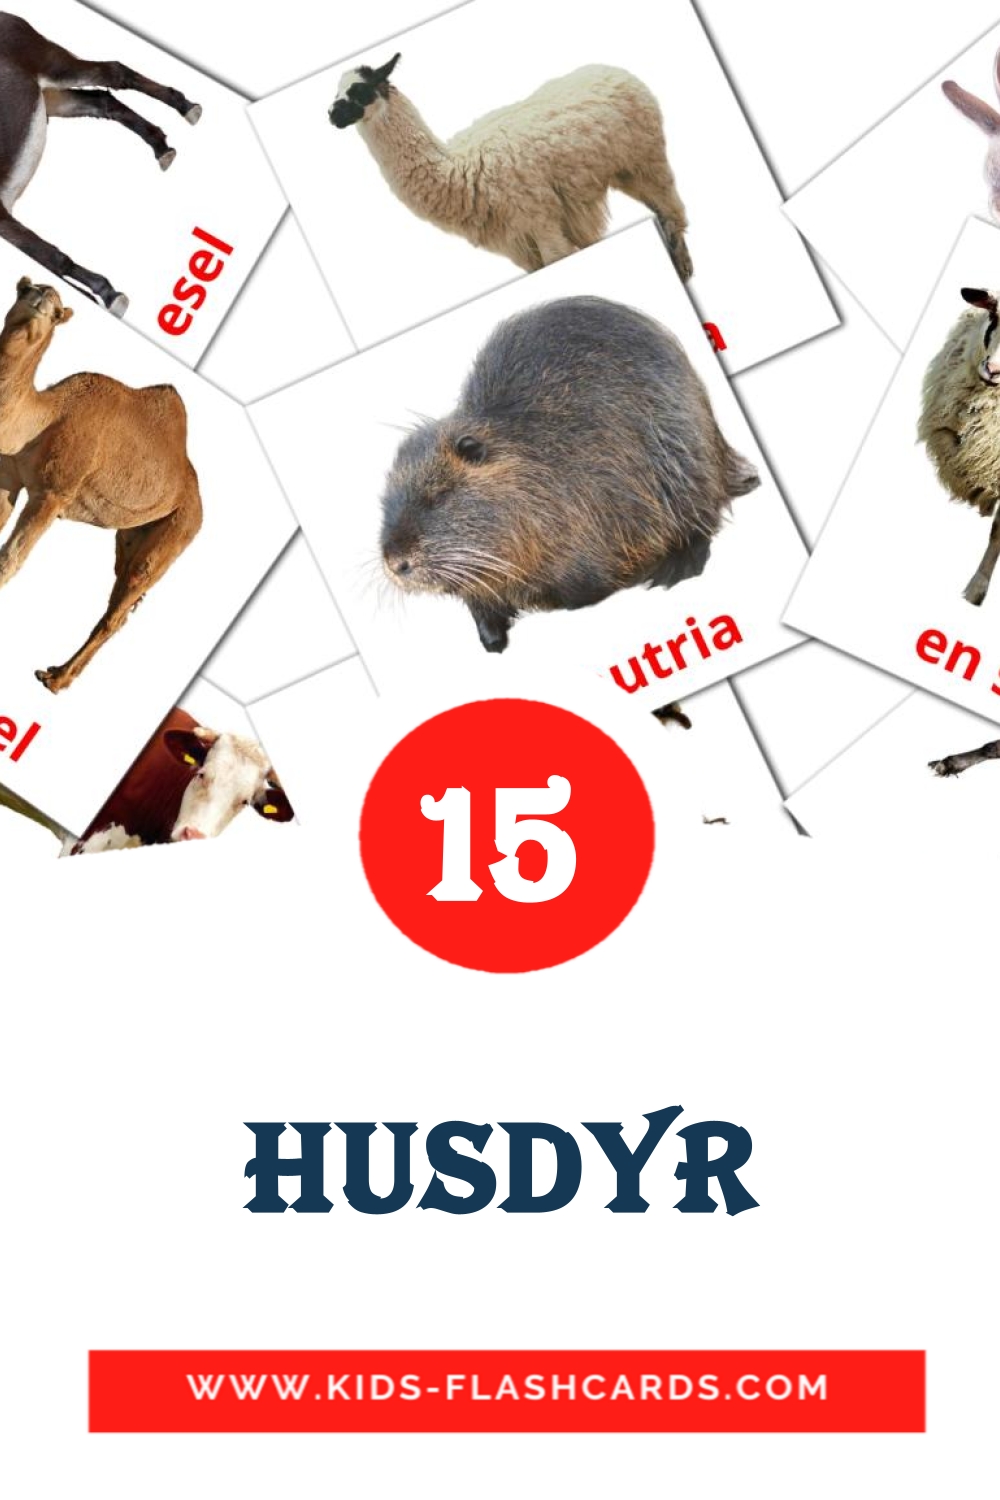 15 cartes illustrées de husdyr pour la maternelle en norvégien